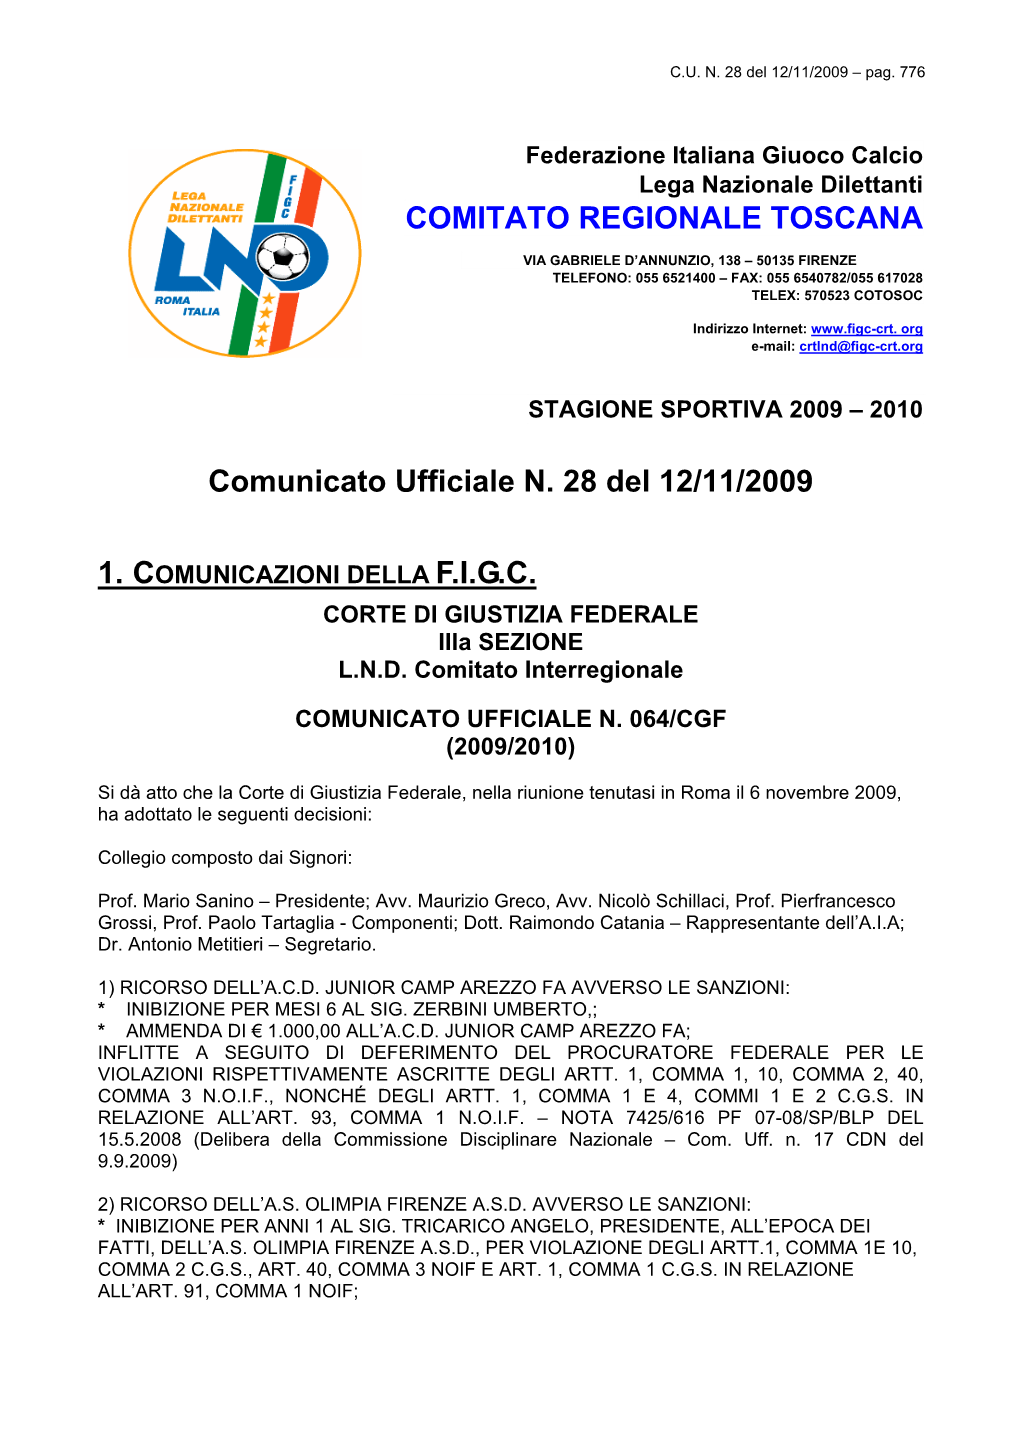 Comunicato Ufficiale N. 28 Del 12/11/2009 COMITATO